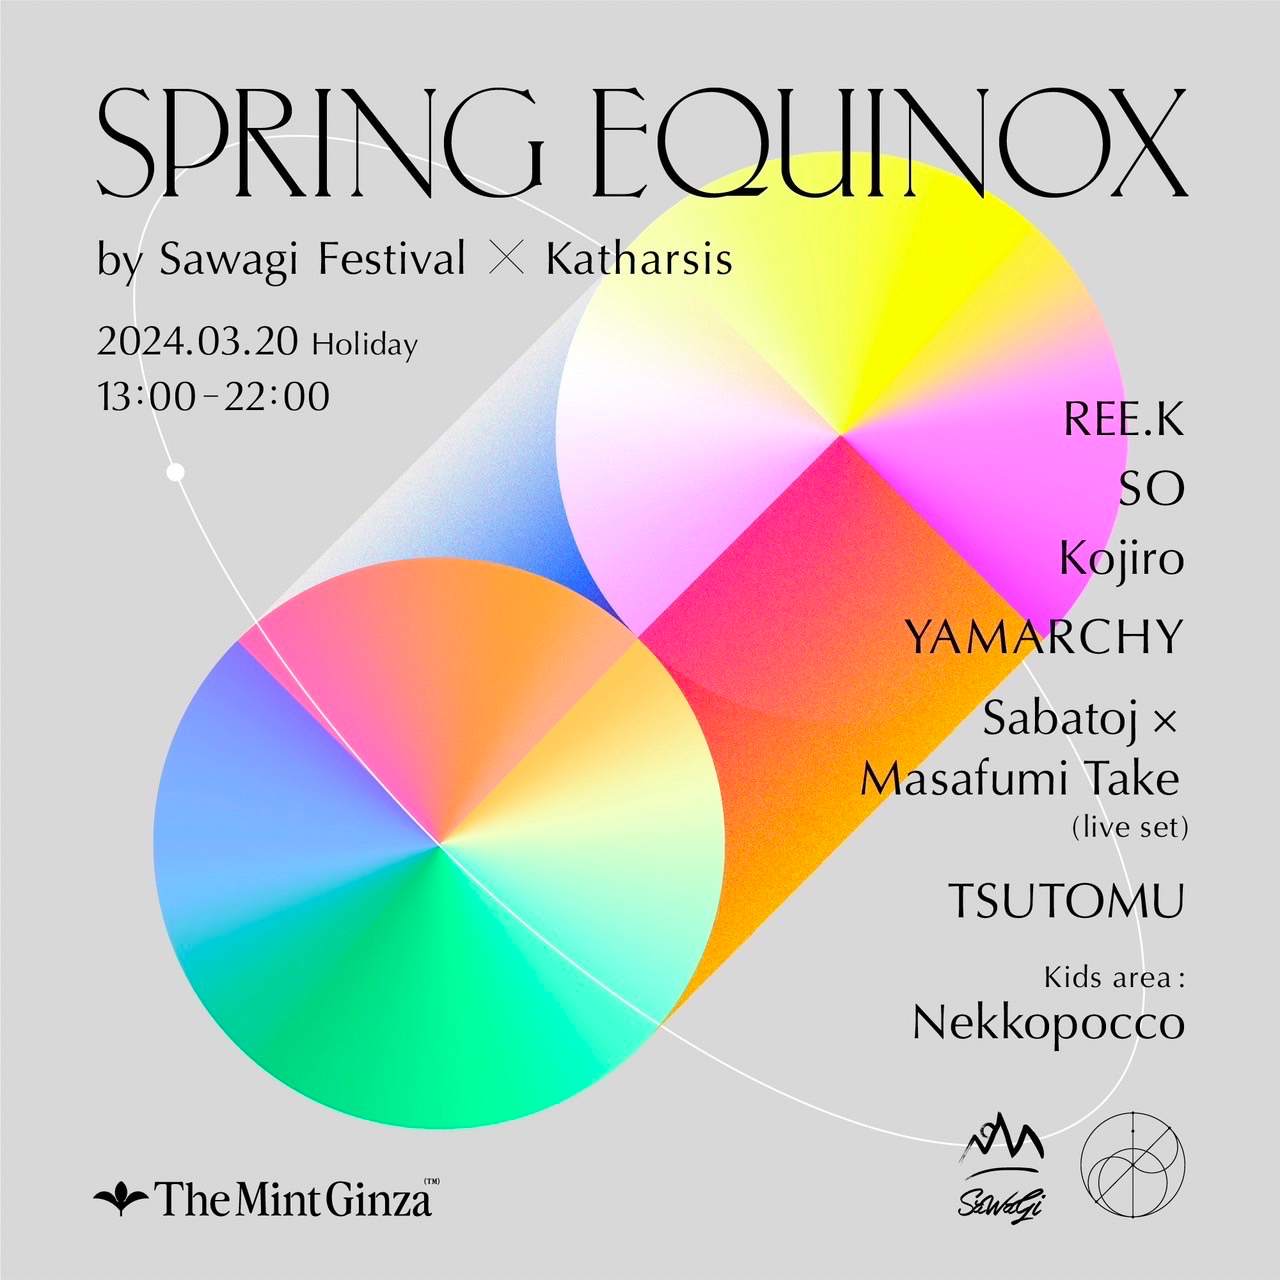 [Postponed 開催延期] 'SPRING EQUINOX' by Sawagi Festival × Katharsis - フライヤー表